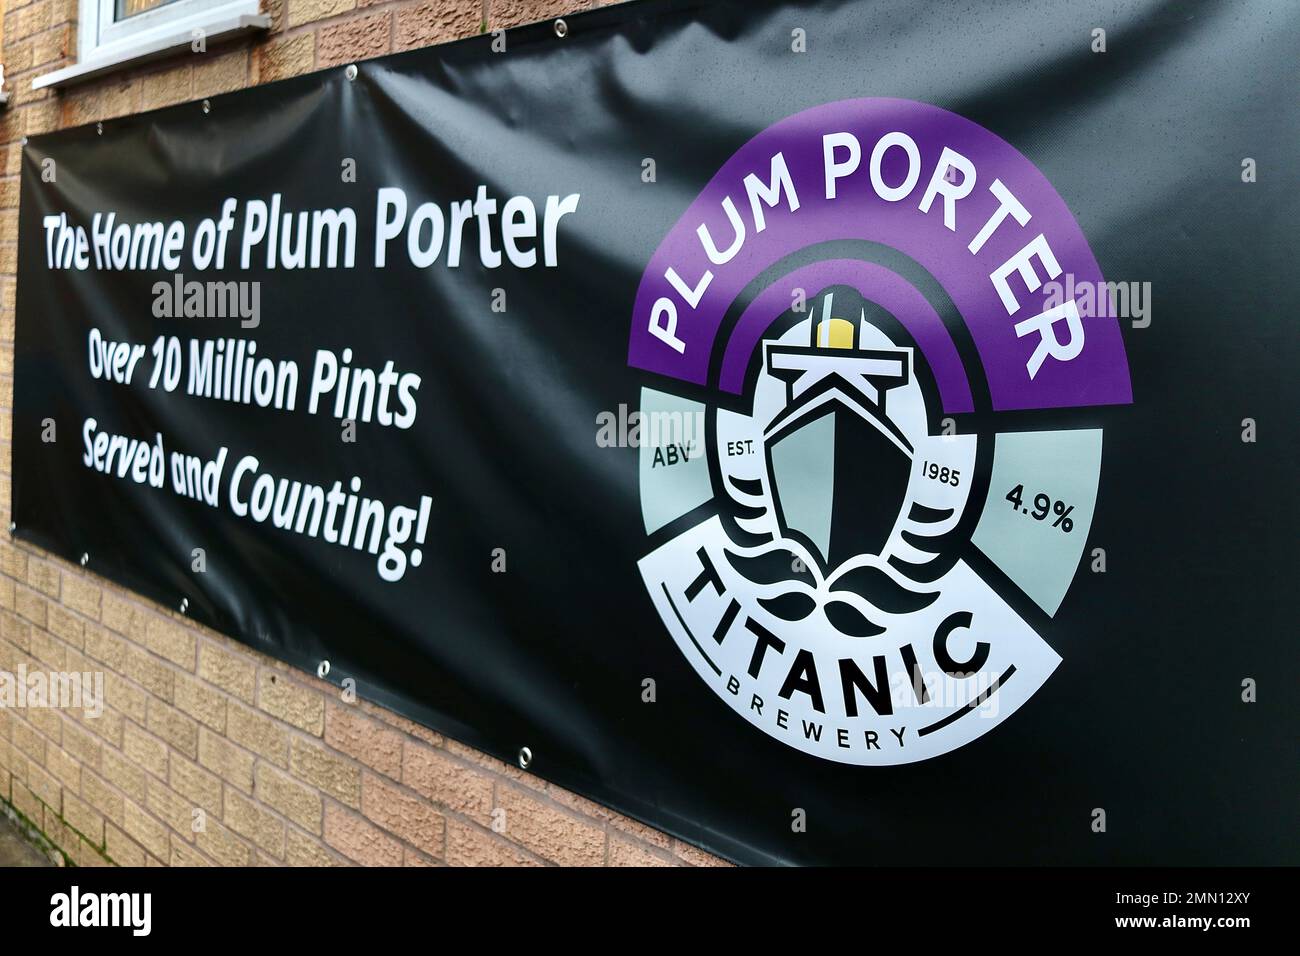 Banner che celebra la vendita di 10 milioni di pinte di Titanic Plum Porter - The Titanic Brewery, Stoke-on-Trent, Staffordshire, UK Foto Stock